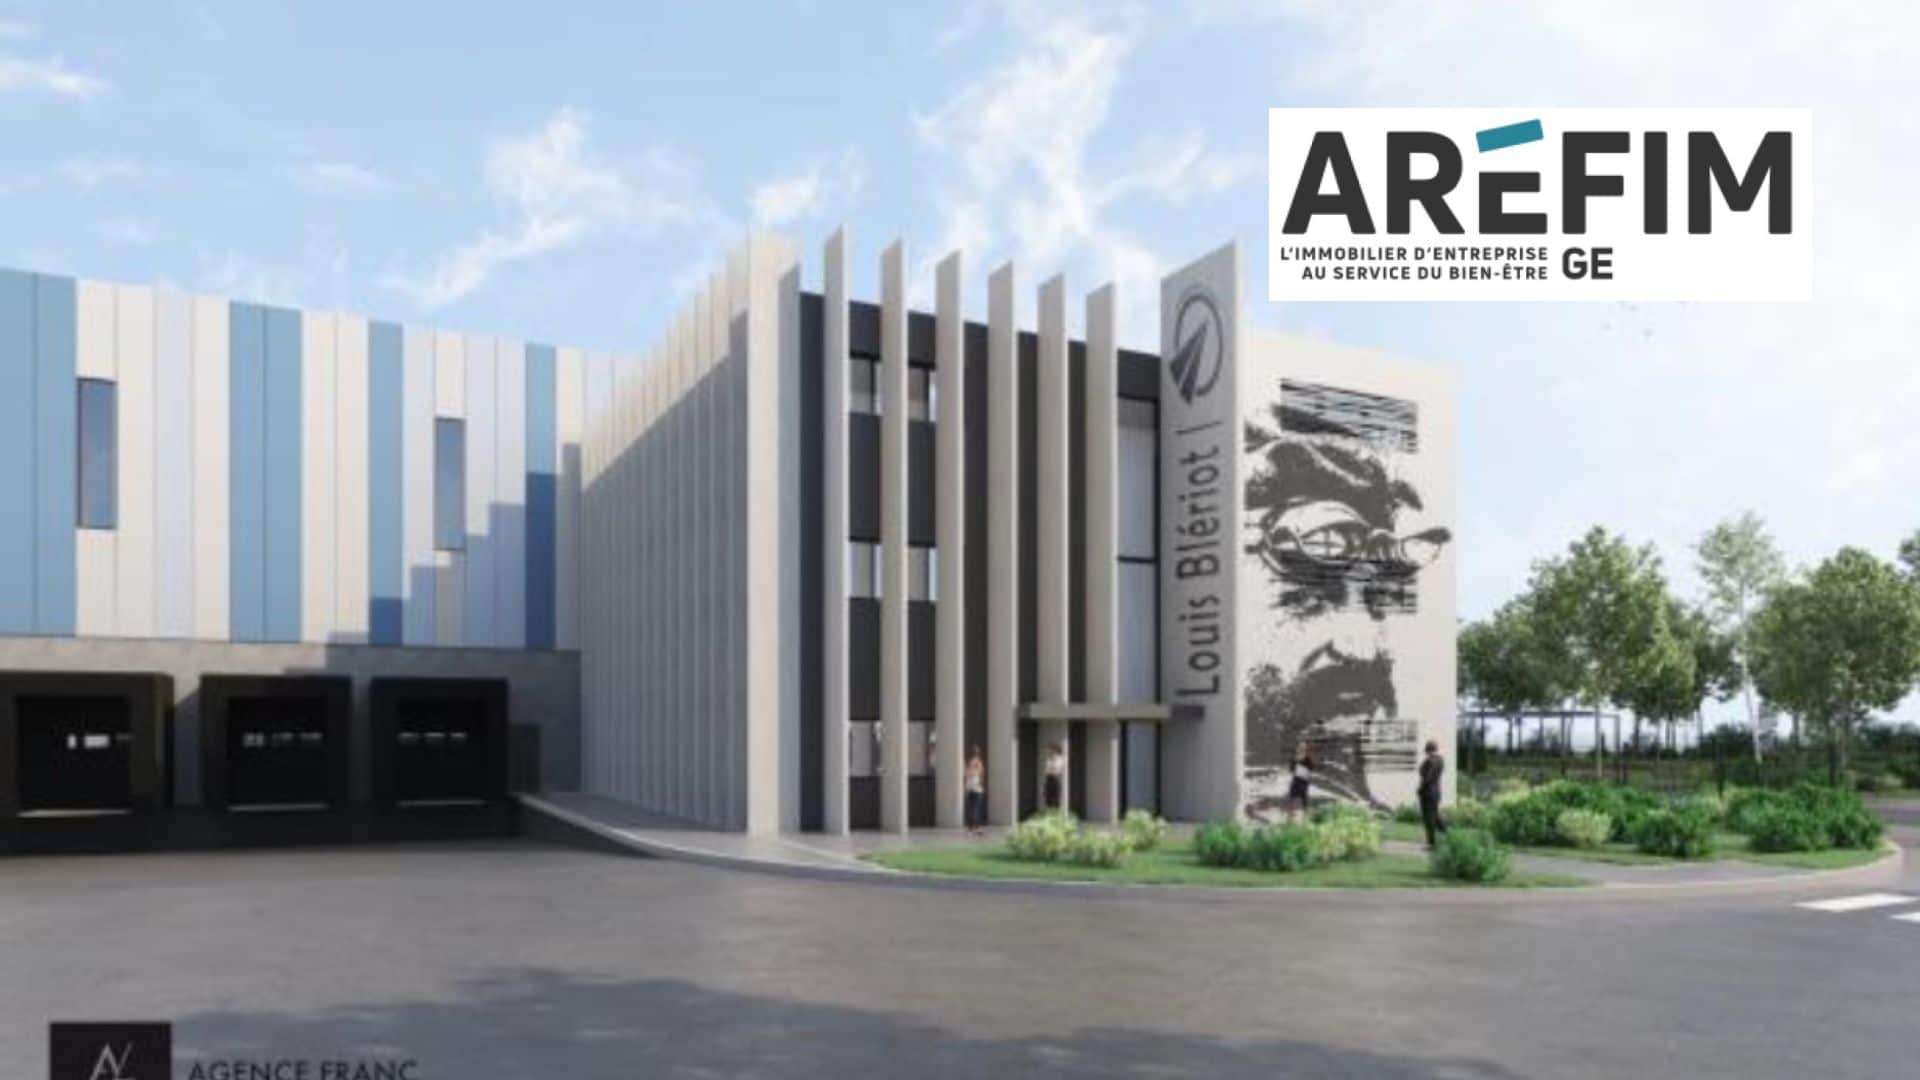 AREFIM GE annonce la signature d’un centre logistique inédit de 50 000 m2 sur Airport Park , un projet ambitieux, fruit d’un travail collaboratif avec la Division Sanitaire Chauffage (DSC) de Saint Gobain France.